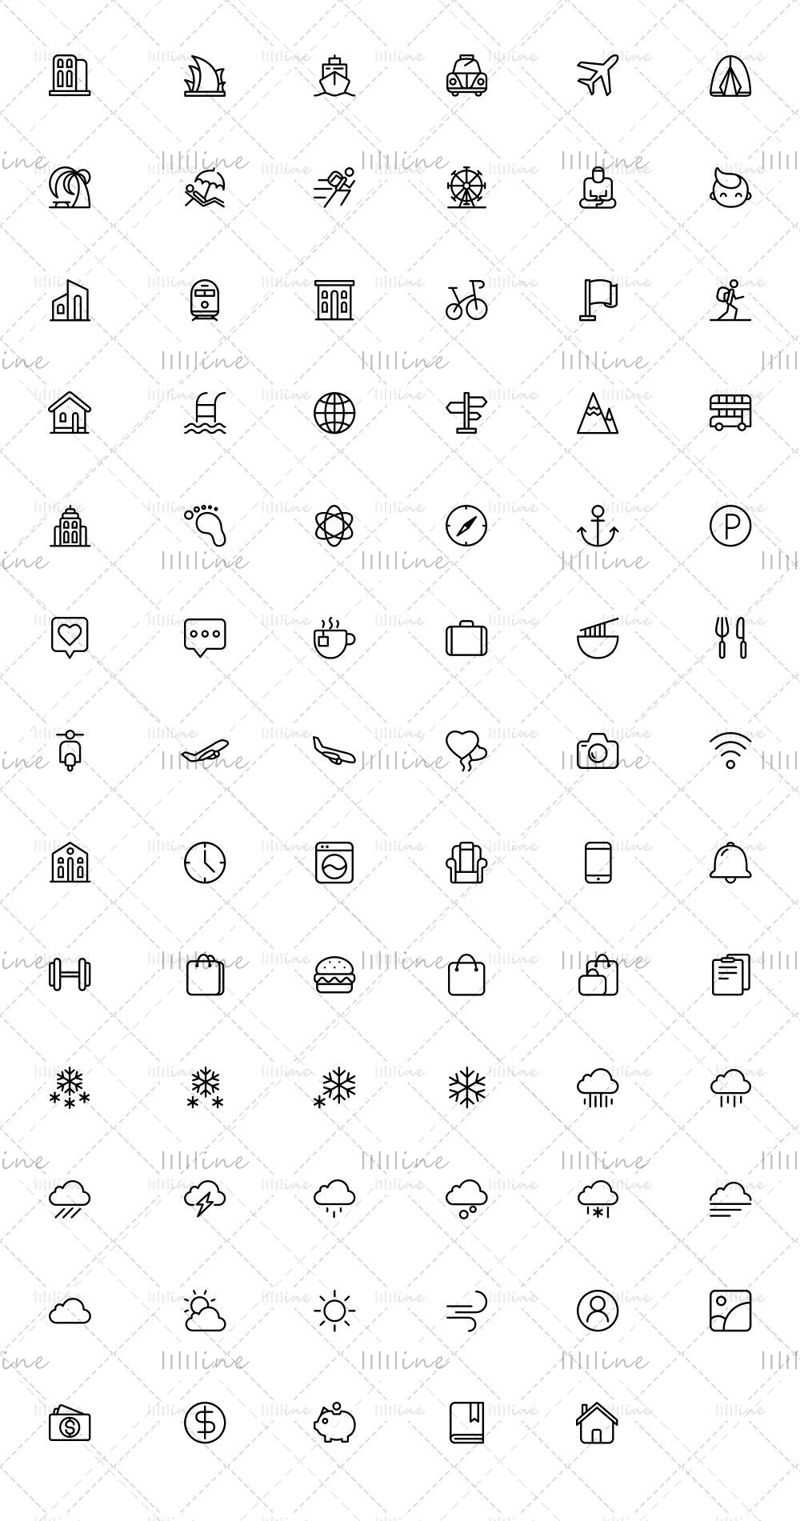 Více než 70 ikon linek služebních cest